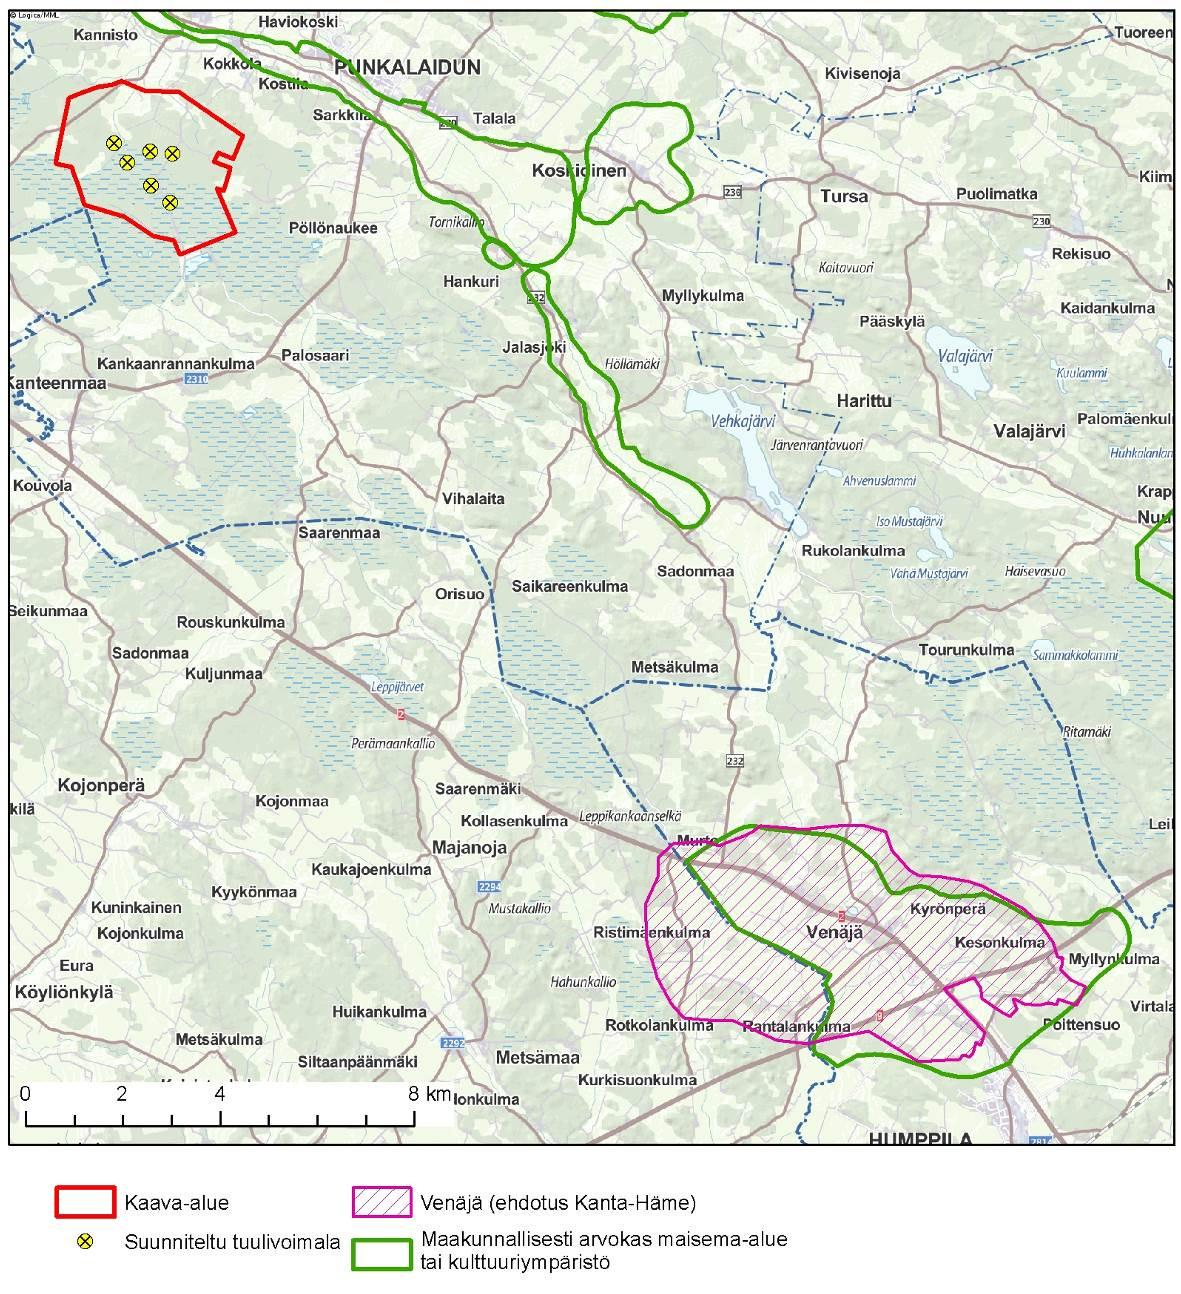 Venäjän-Myllynkulman alue on mukana valtakunnallisten ja maakunnallisten alueiden päivitysinventoinnissa ja selvitysraportissa (Hämeen ELY 2011).